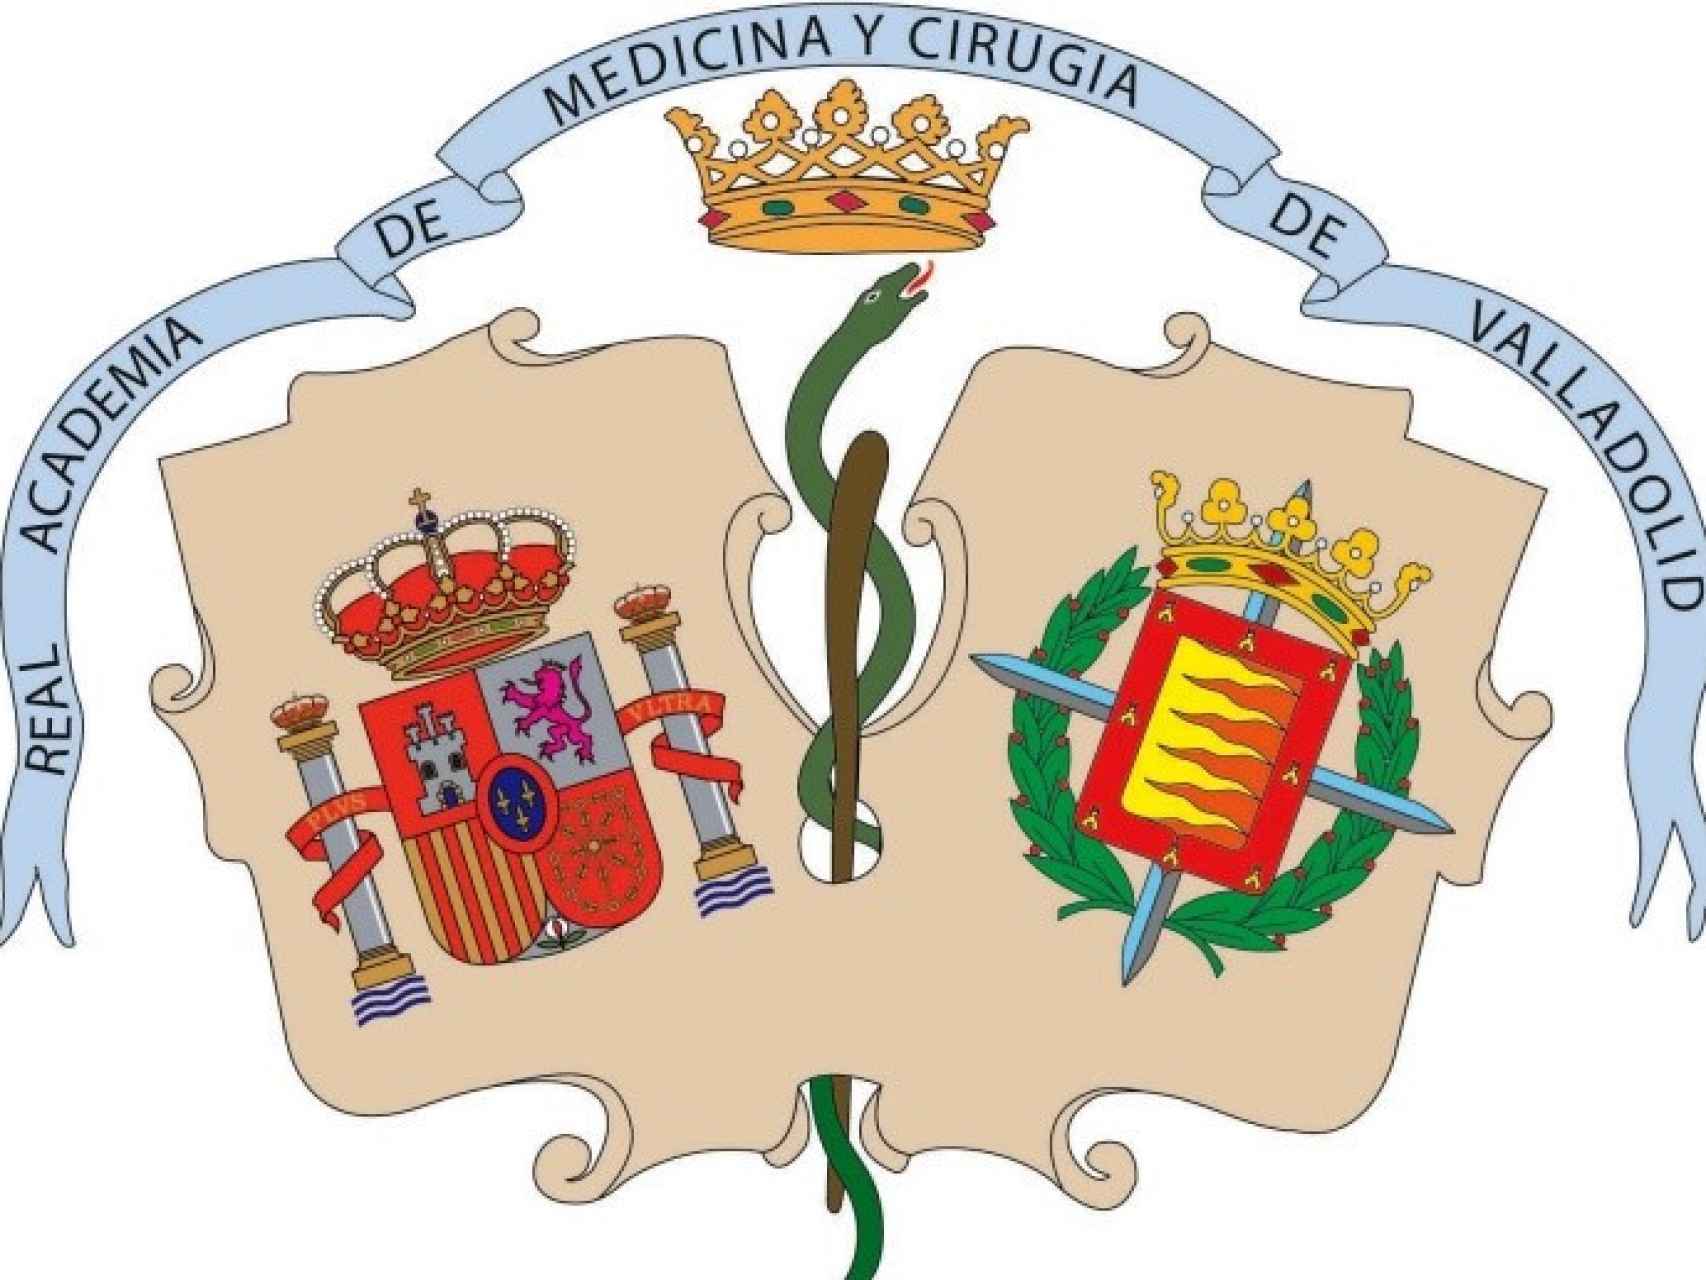 Real Academia de la Medicina y Cirugía de Valladolid